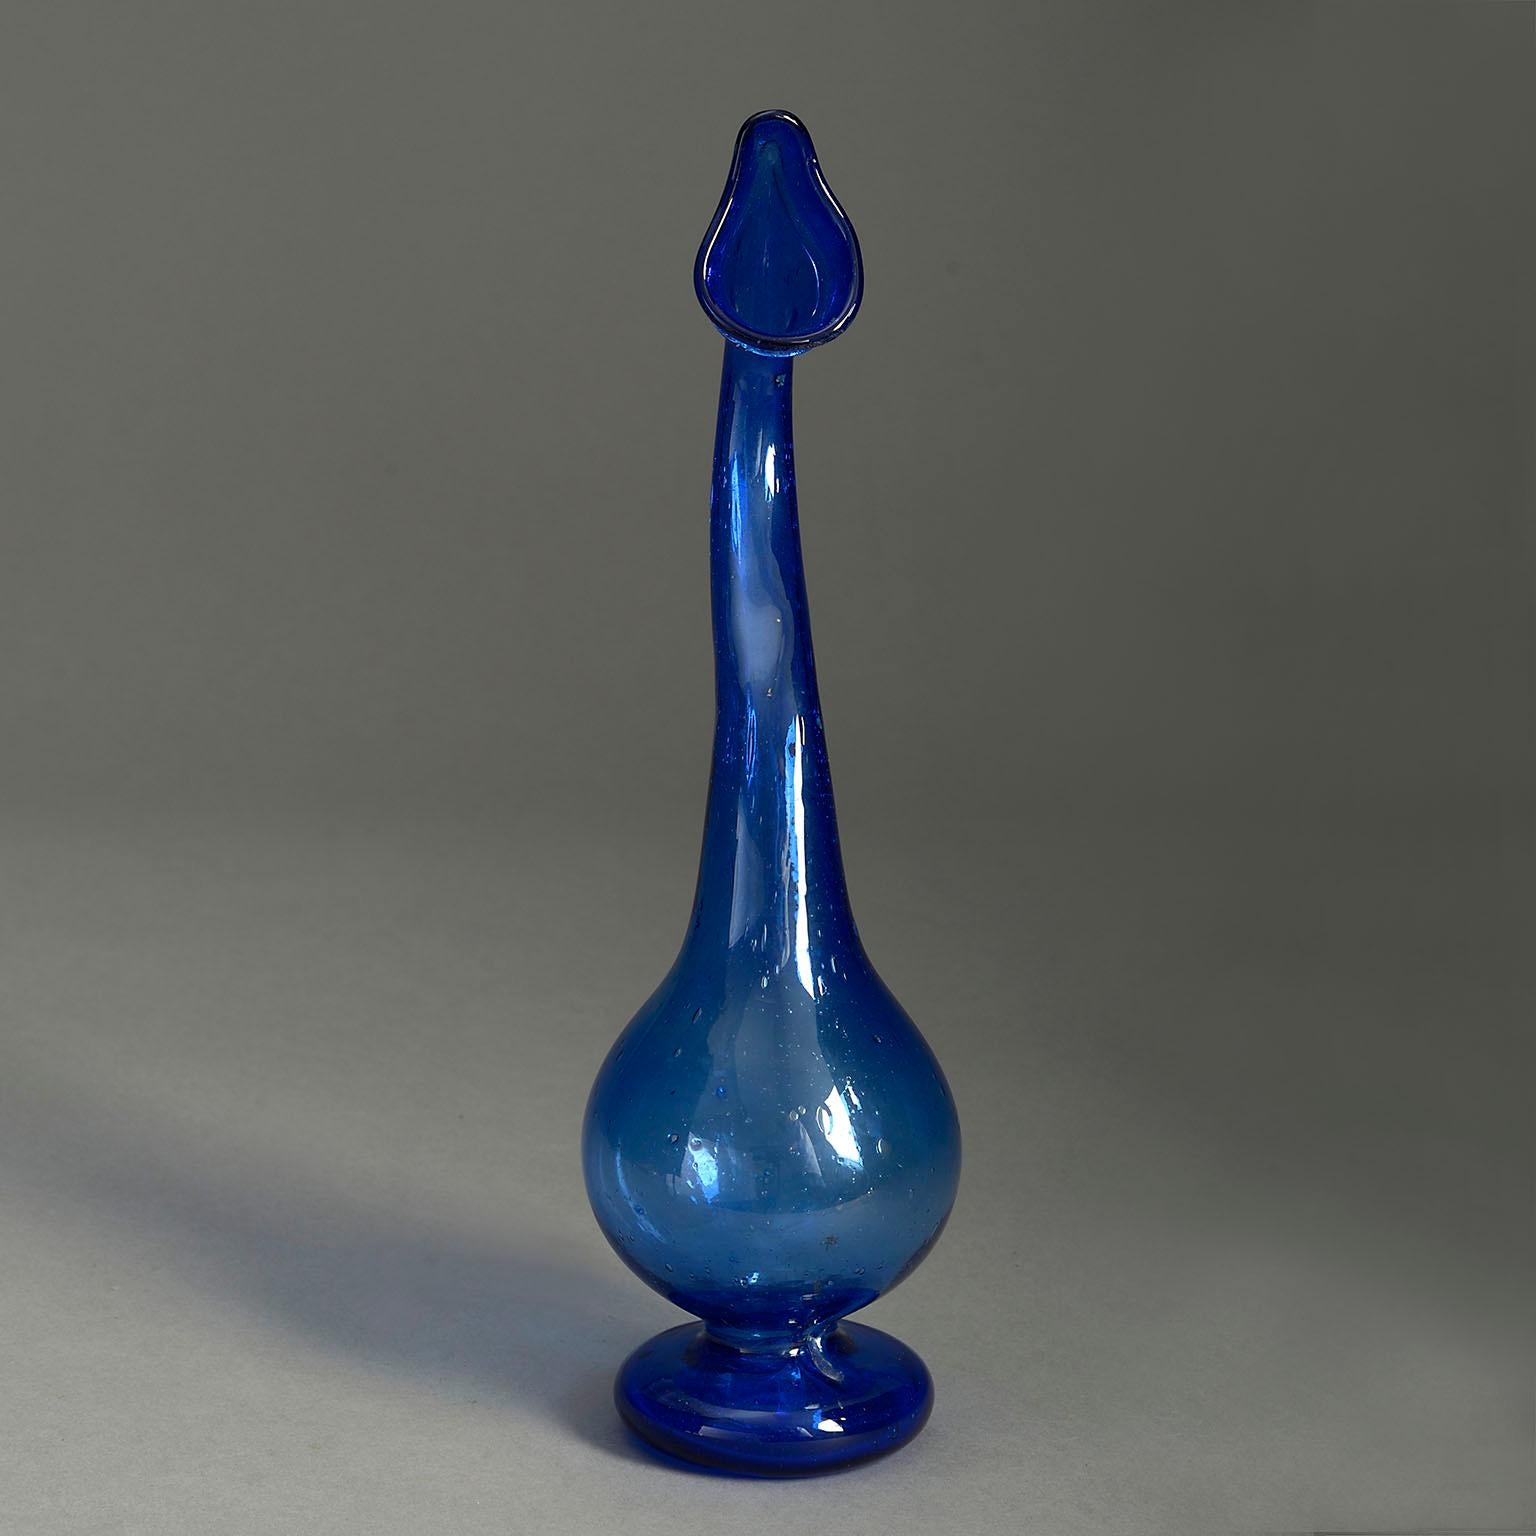 Vase en verre bleu Art nouveau du début du 20e siècle de forme organique, le col en forme au-dessus d'une base bulbeuse avec un pied circulaire.

